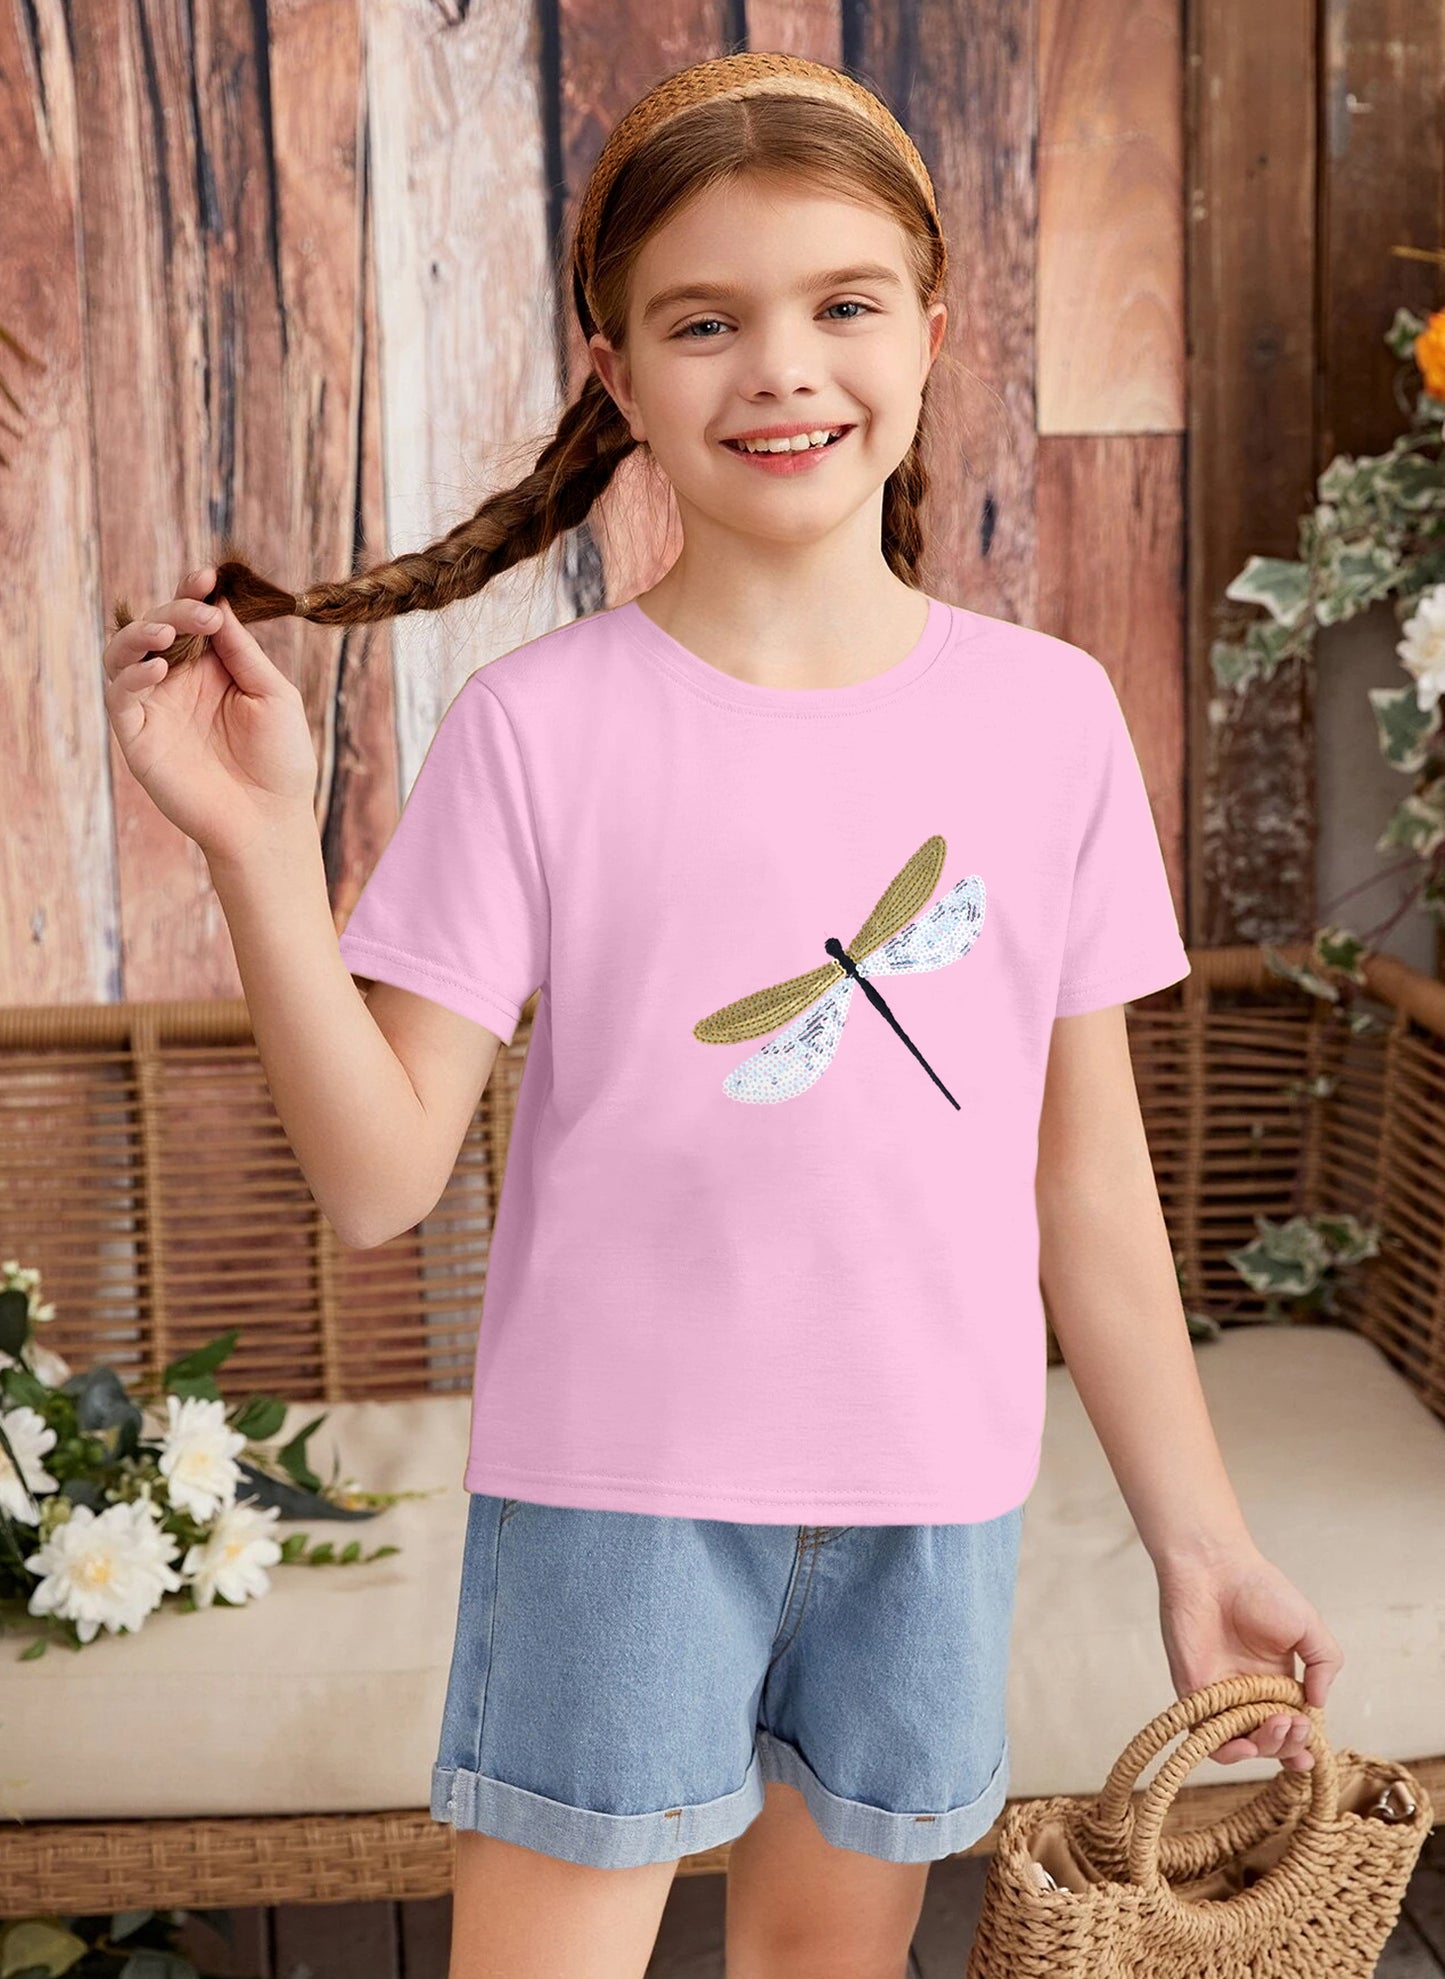 Girls Pink Sequin Cotton T-shirt